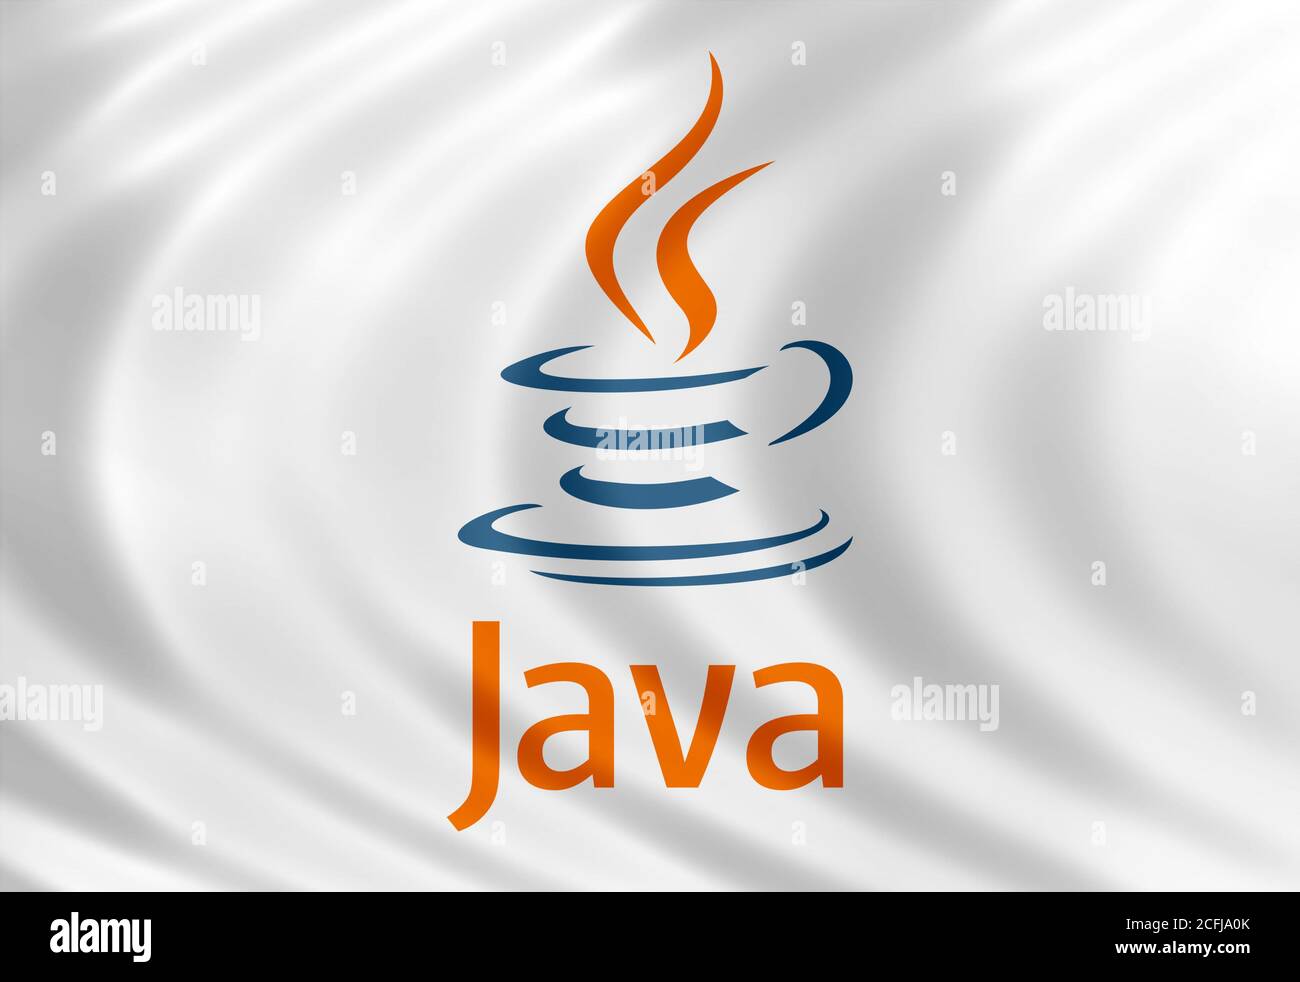 Java logo Stock Photo